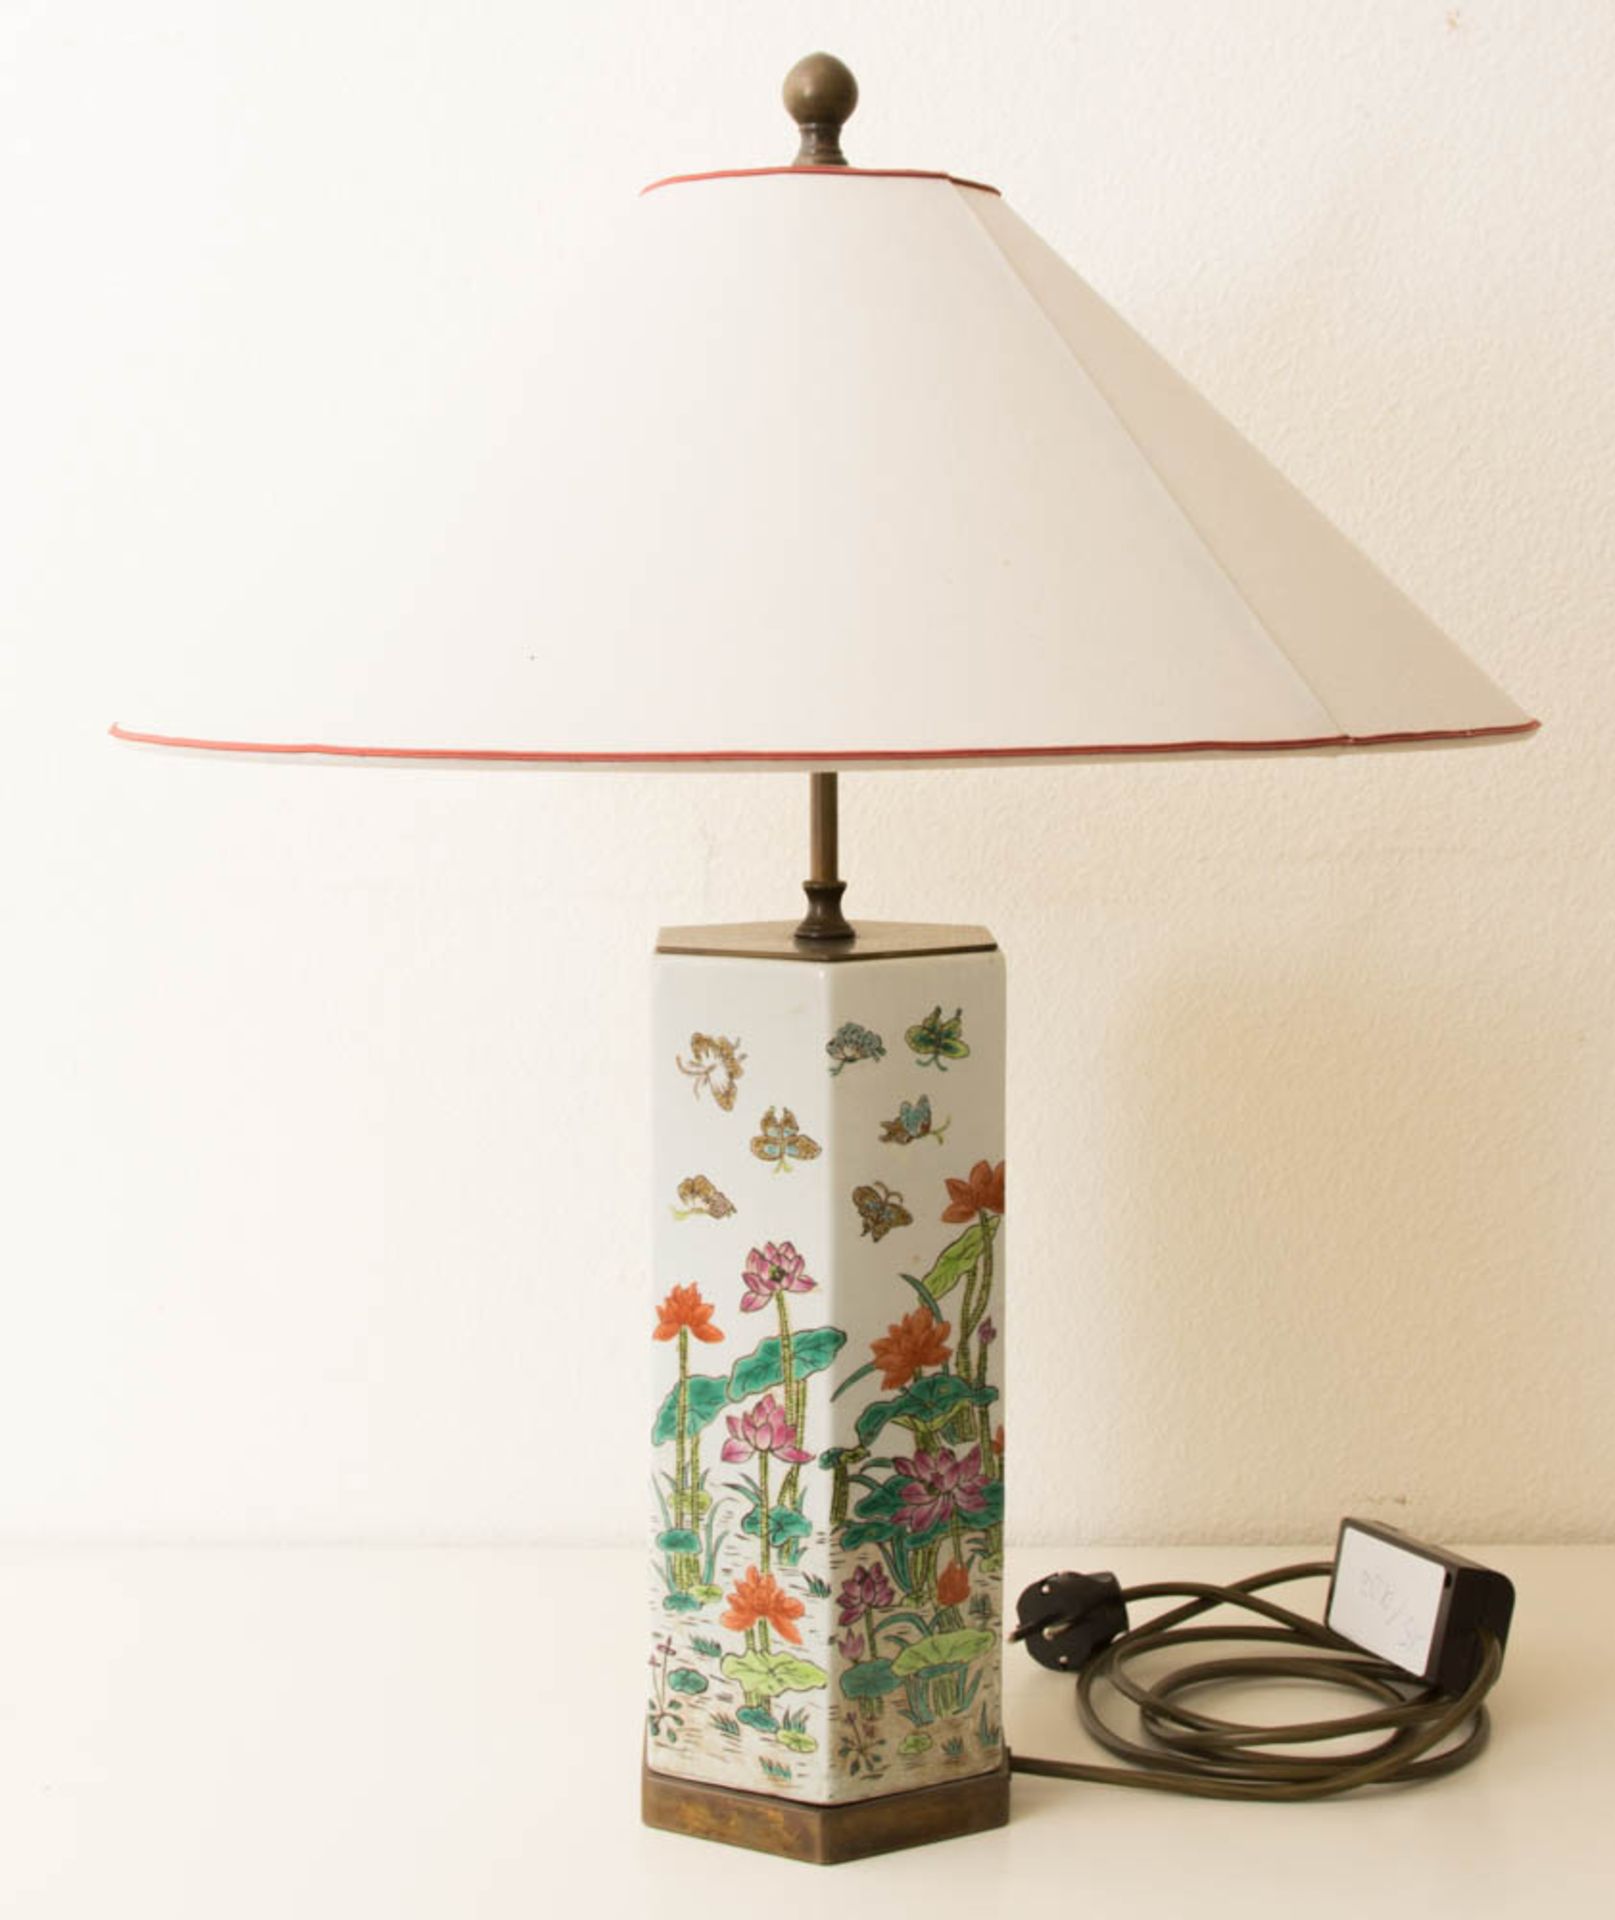 Porzellan Lampe mit Blumendekor.